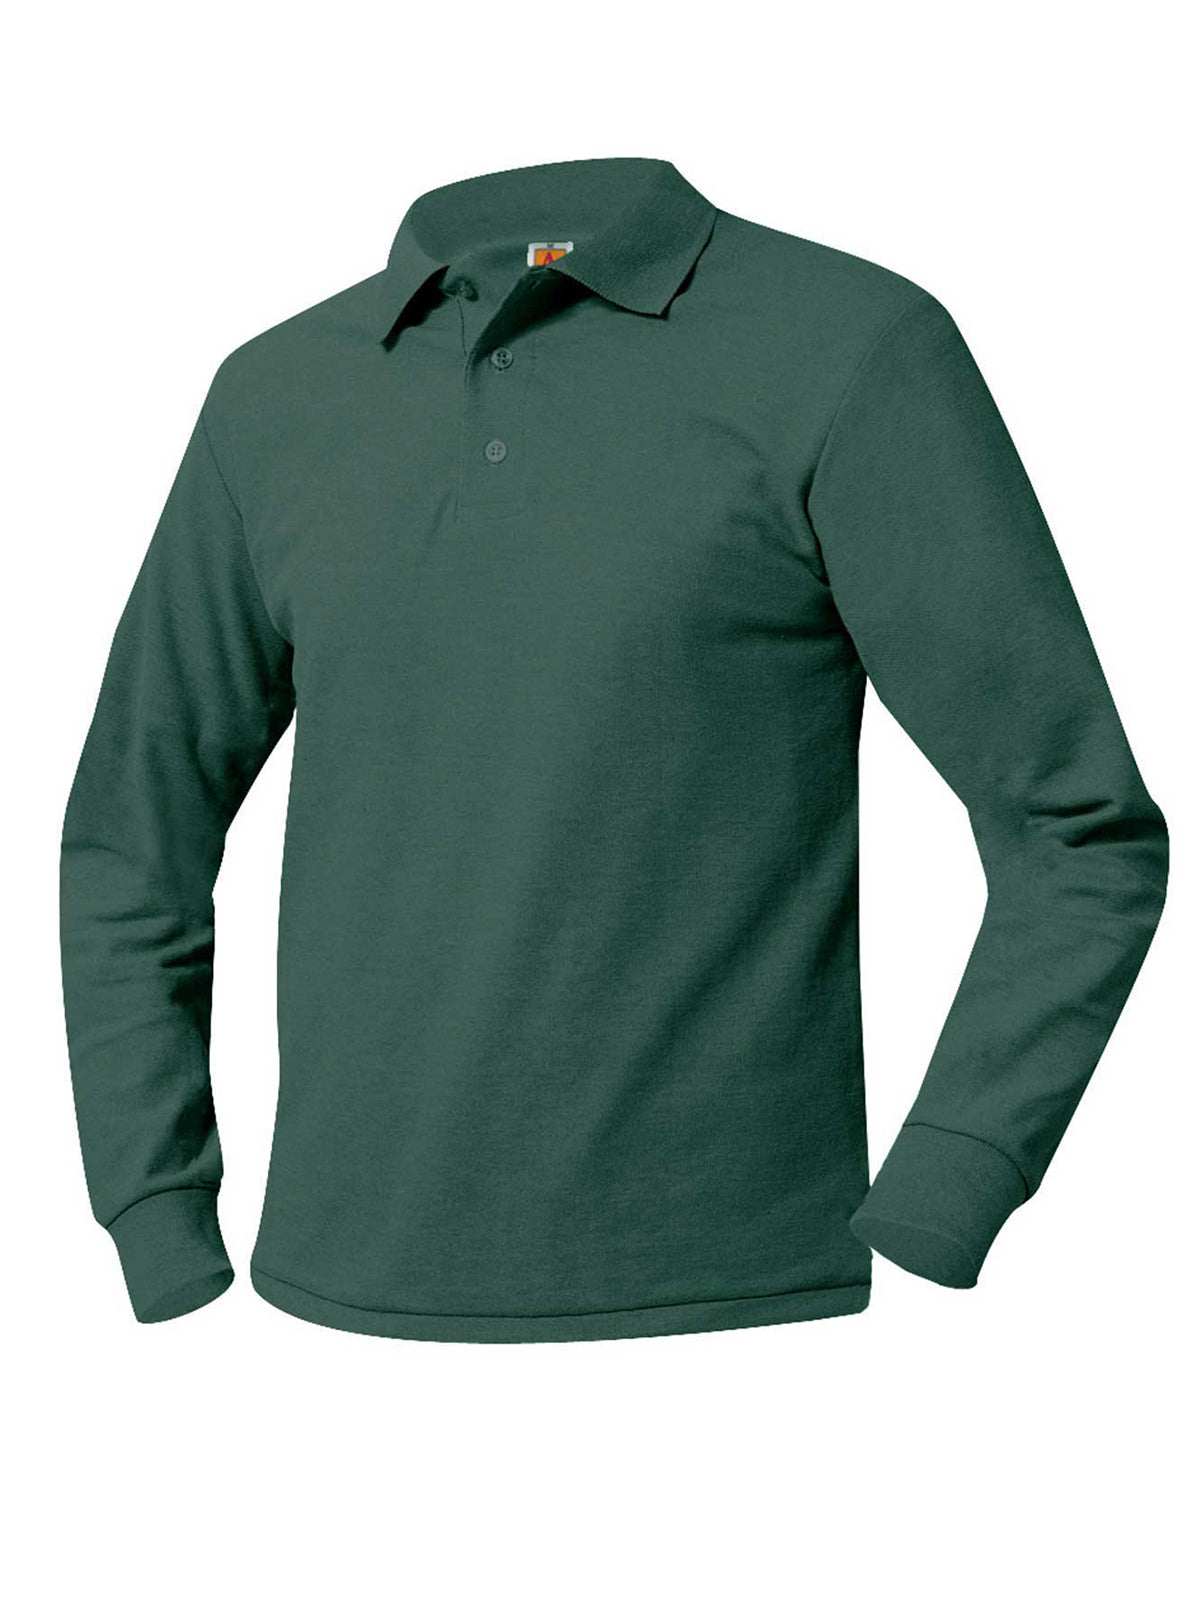 Unisex Long Sleeve Knit Shirt - 8766 - Tulane Forest Lane Green